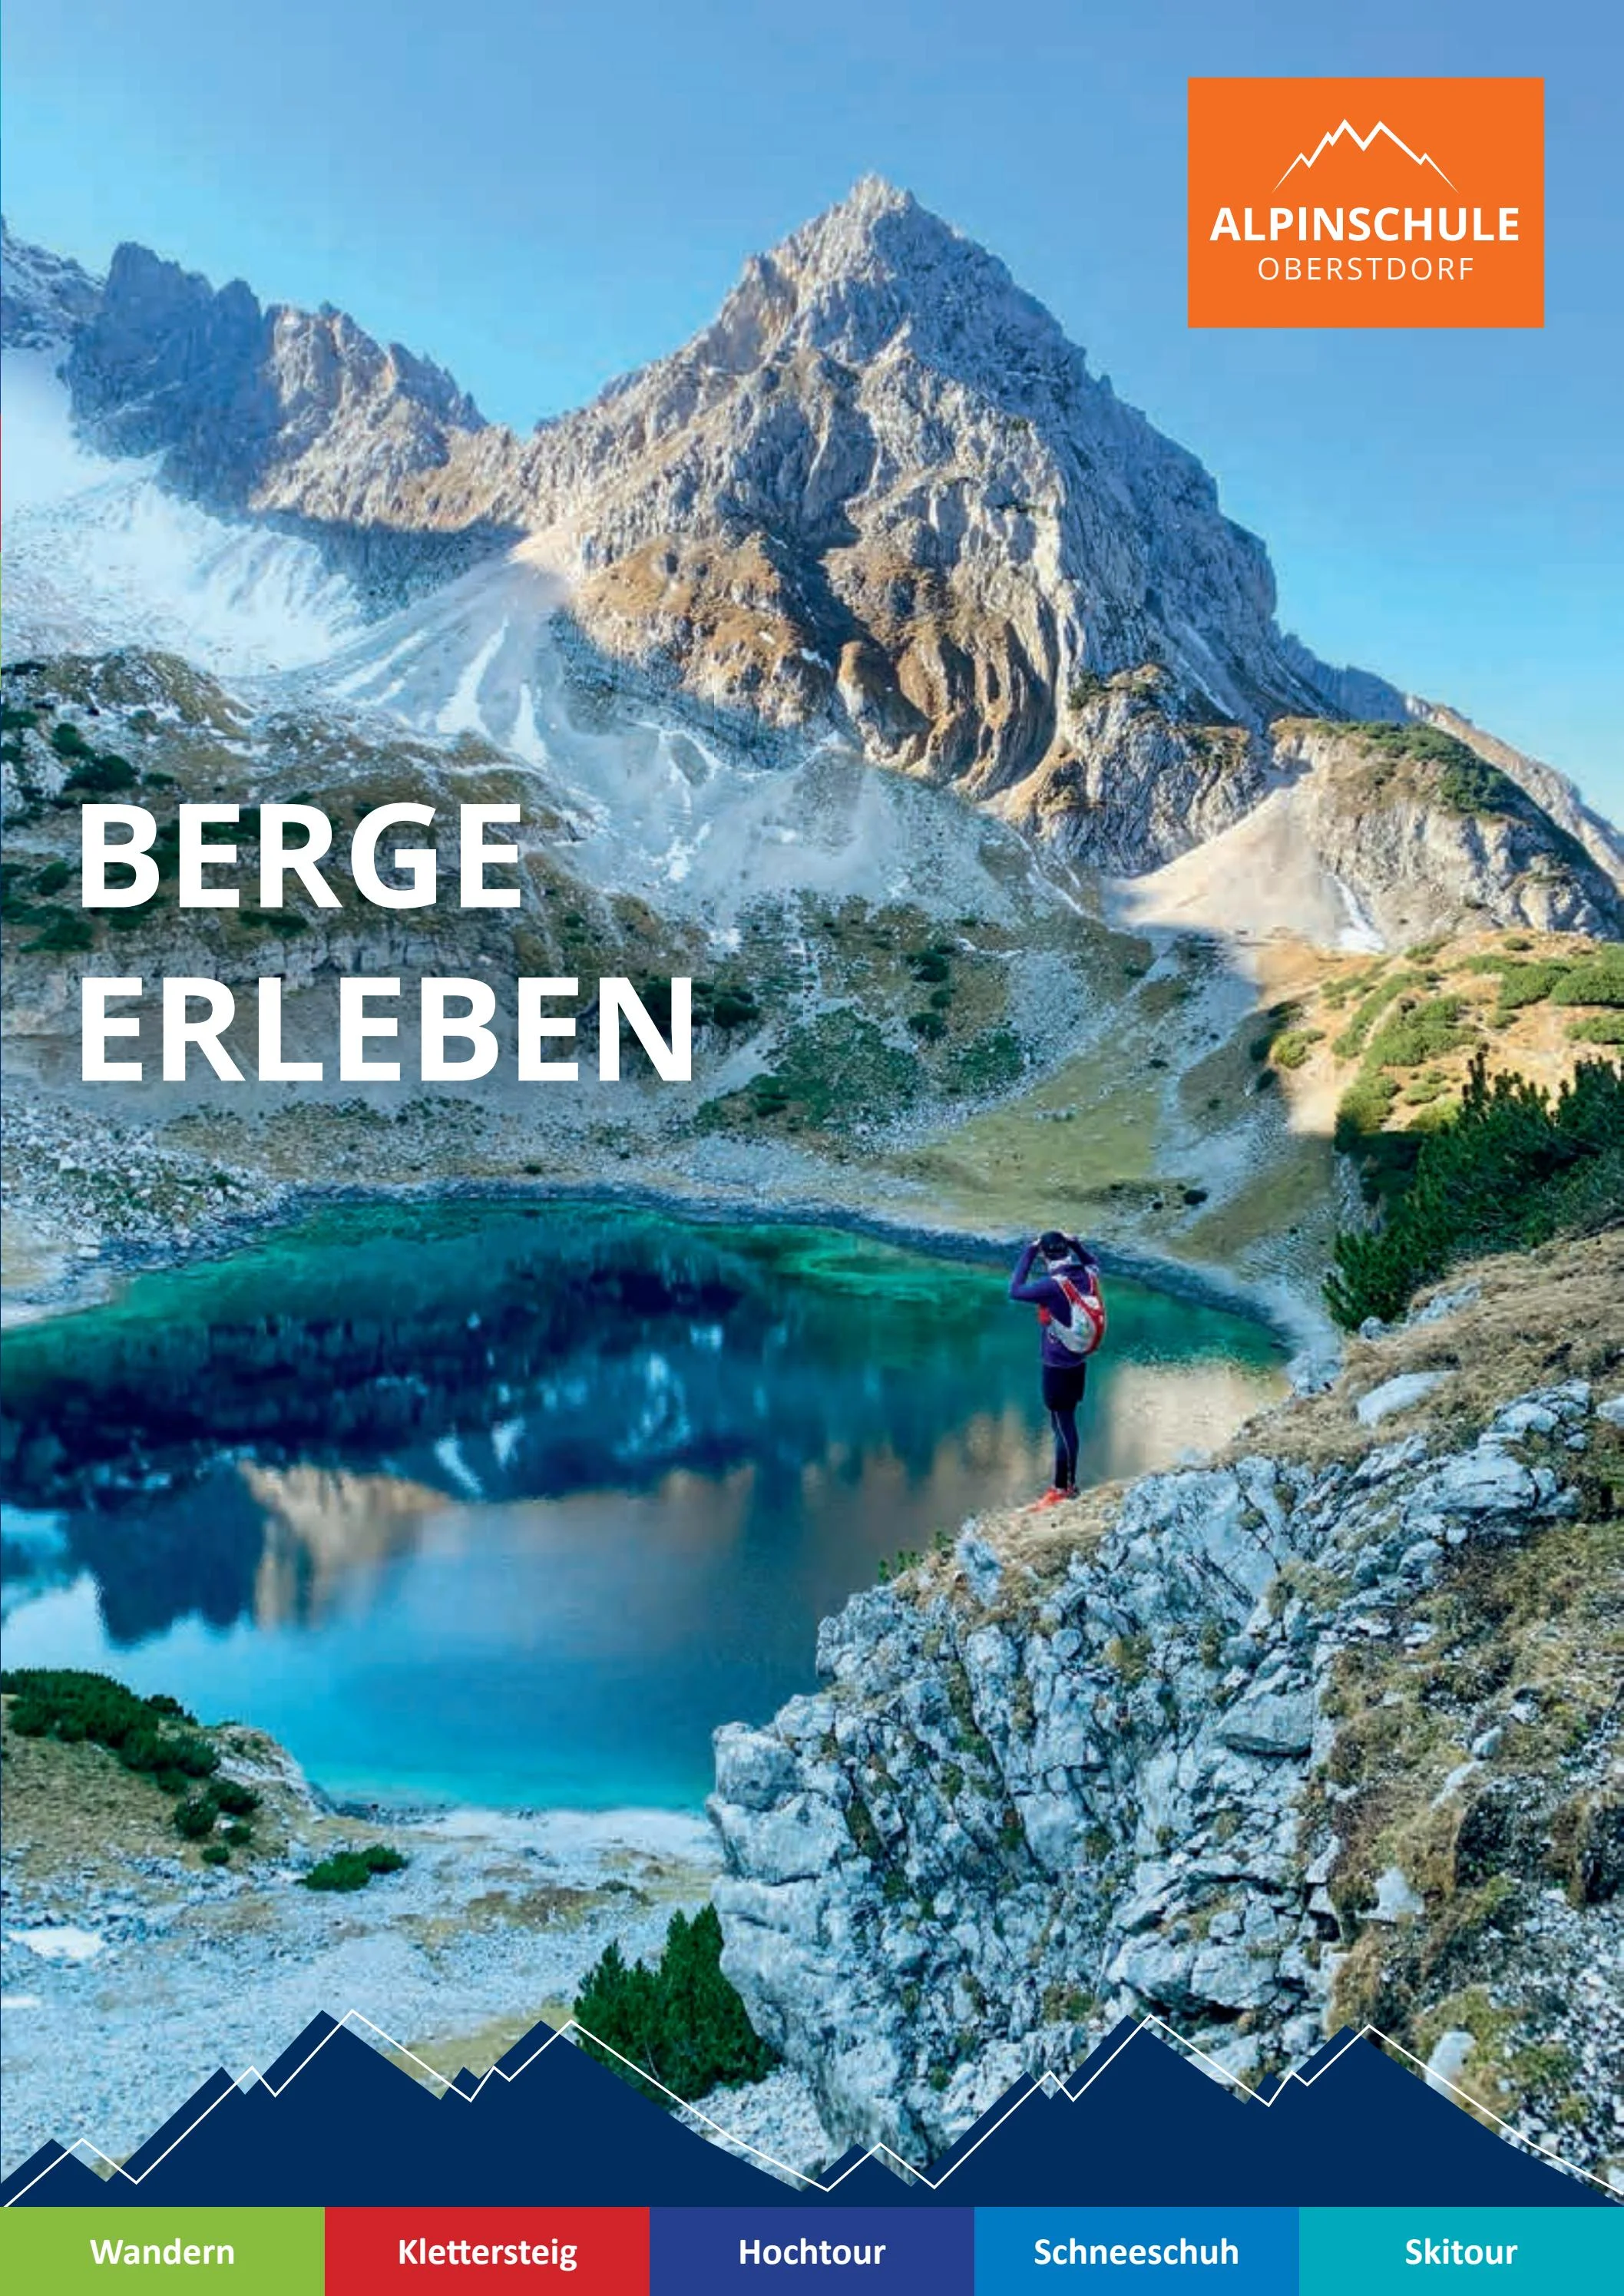 Wanderlust in den Alpen: Die Magie des Wanderns